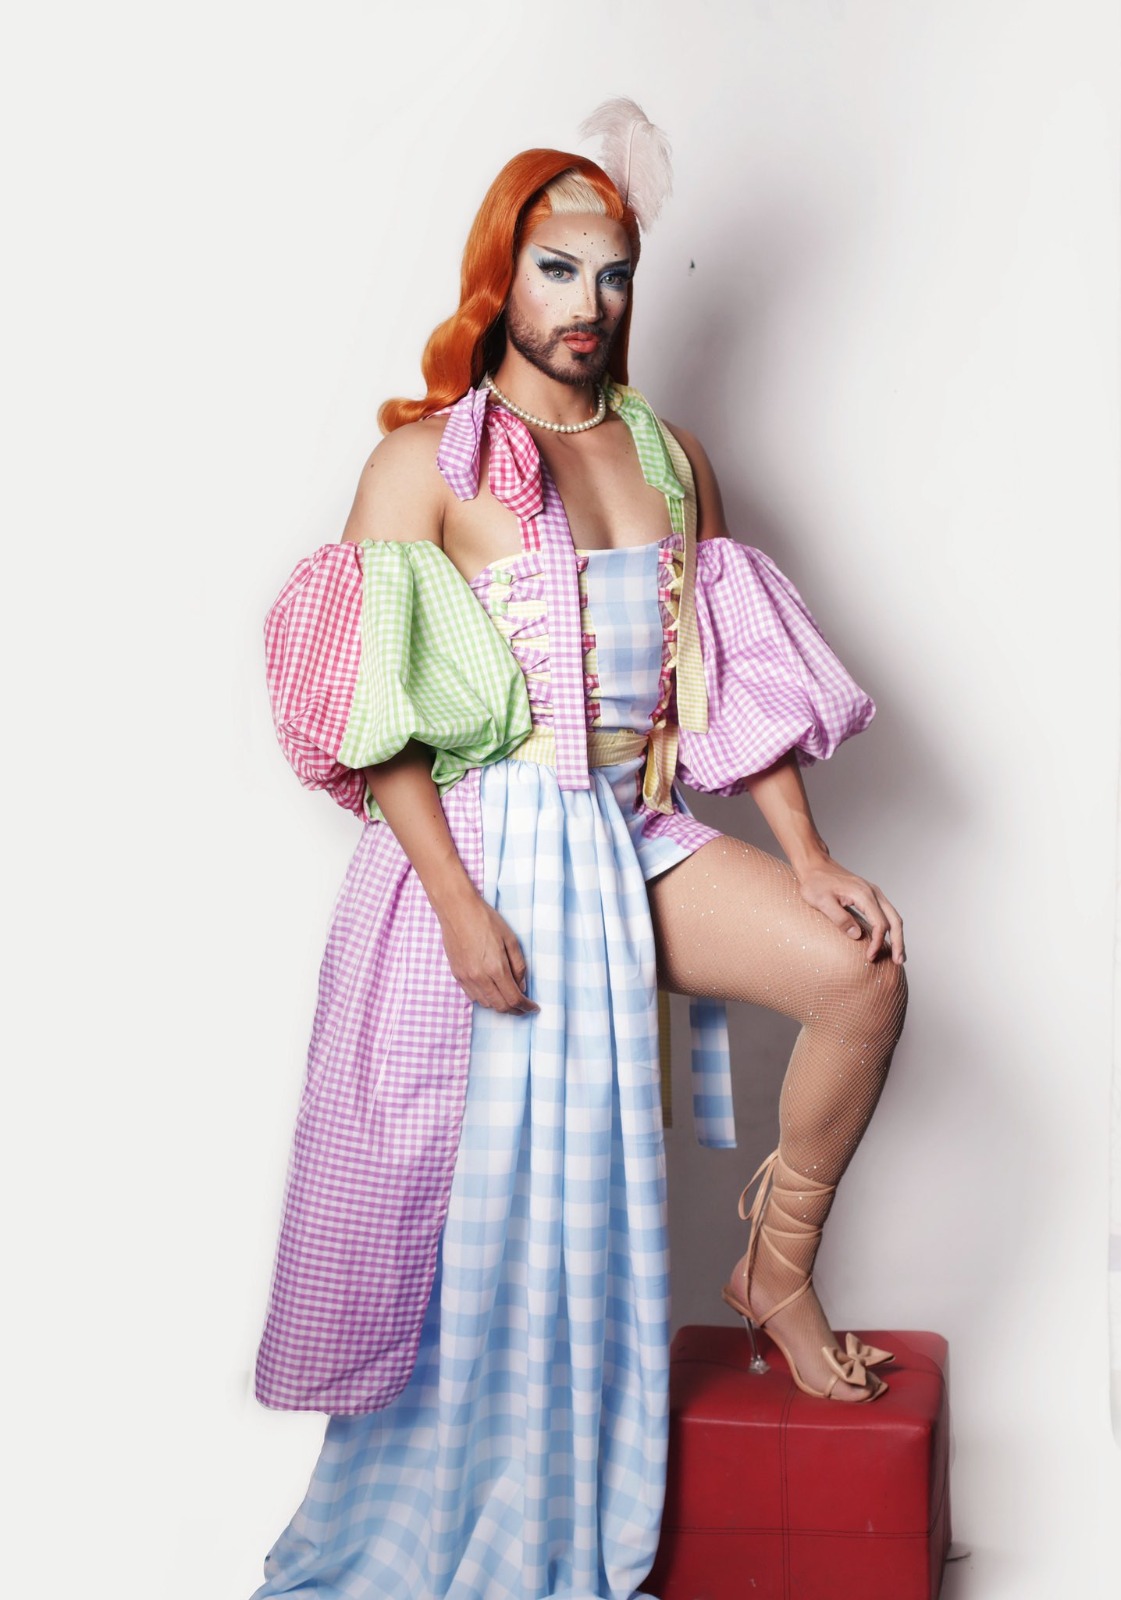 Acusan a drag queen del programa ‘La Más Draga’ de robarse un vestido en un antro de Veracruz